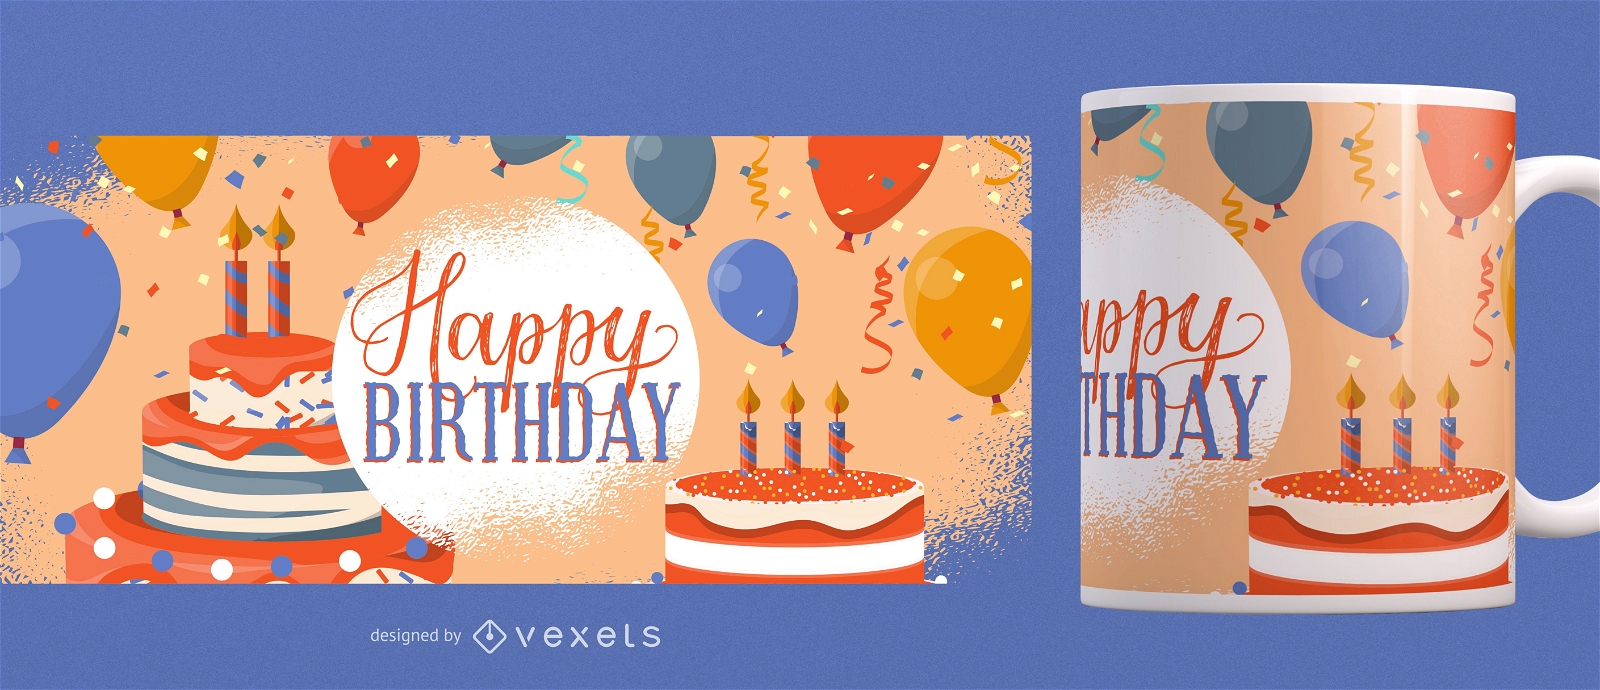 Happy Birthday Mug Design Vector Download